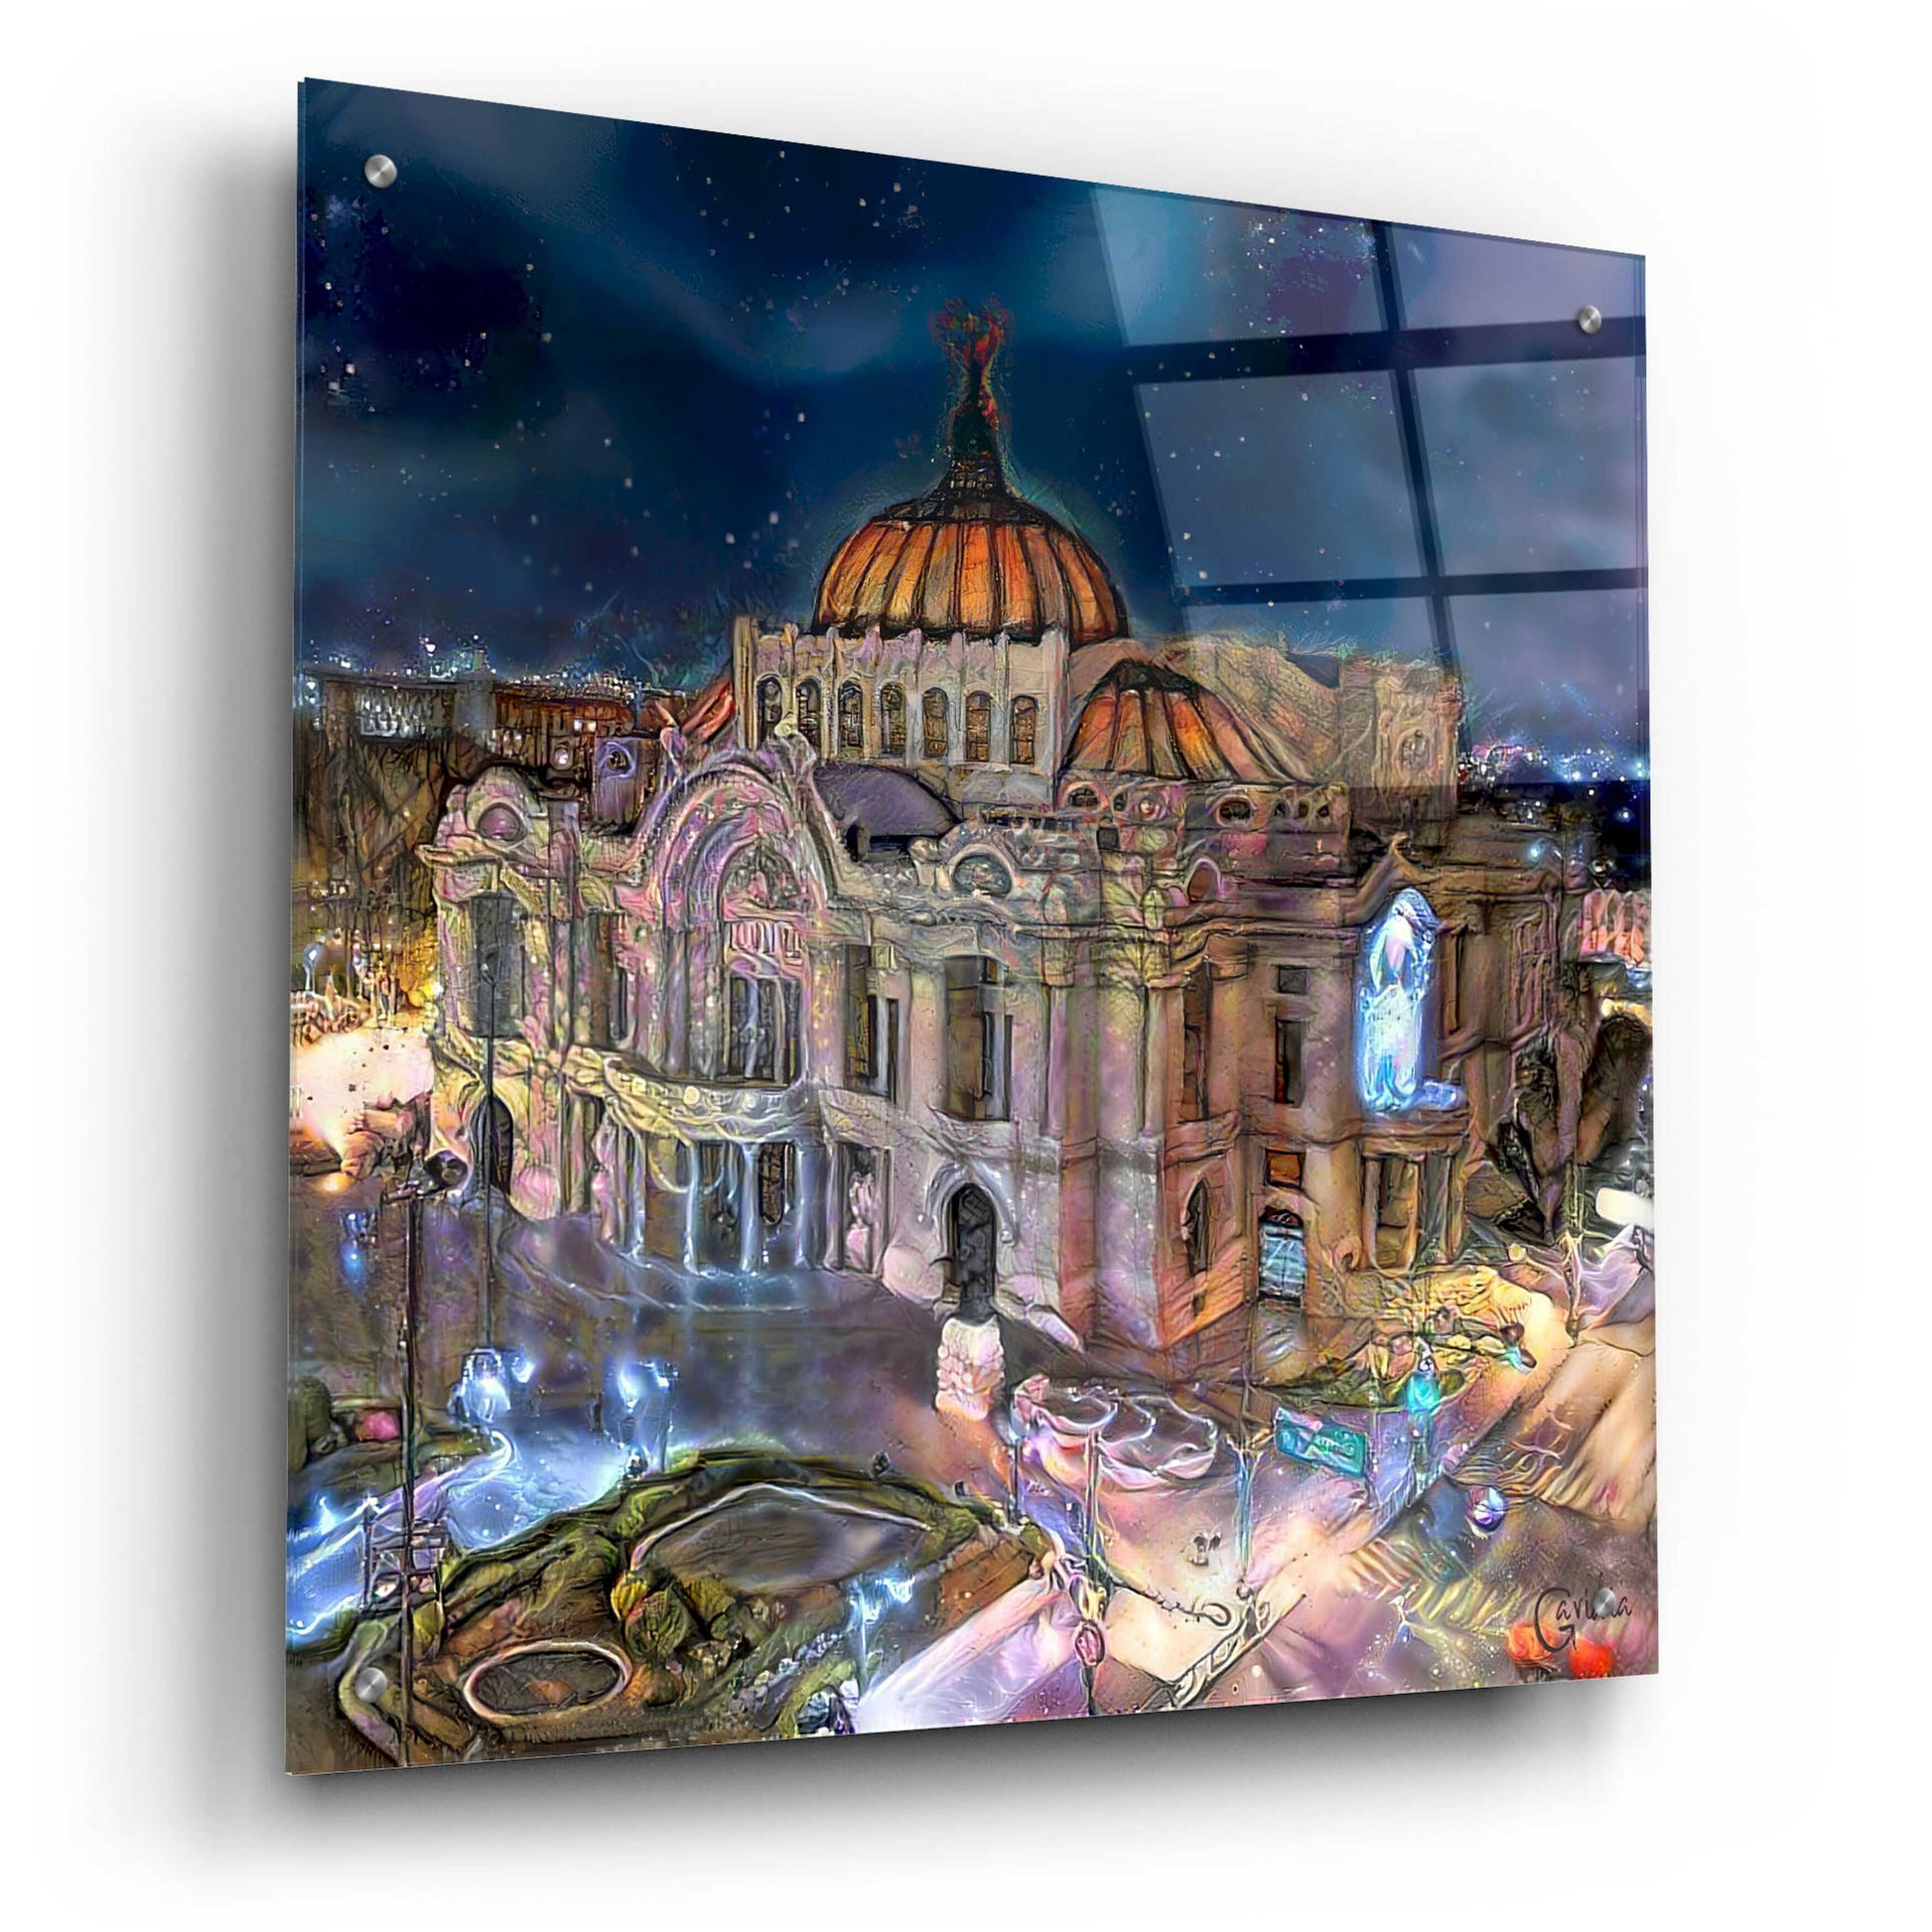 Epic Art 'Mexico City Palace of Fine Arts at night' by Pedro Gavidia, Acrylic Glass Wall Art,24x24